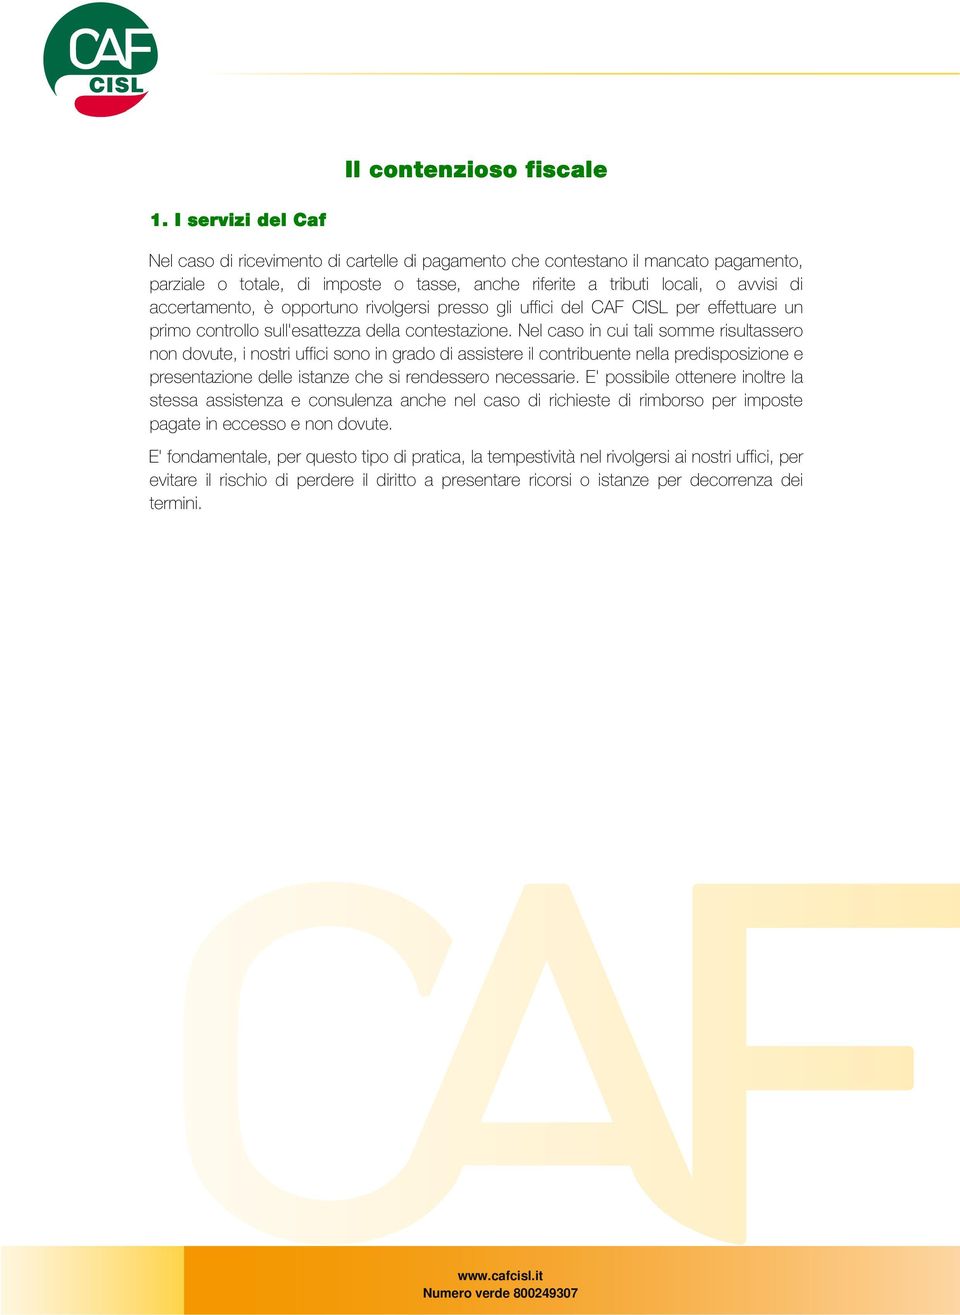 accertamento, è opportuno rivolgersi presso gli uffici del CAF CISL per effettuare un primo controllo sull'esattezza della contestazione.